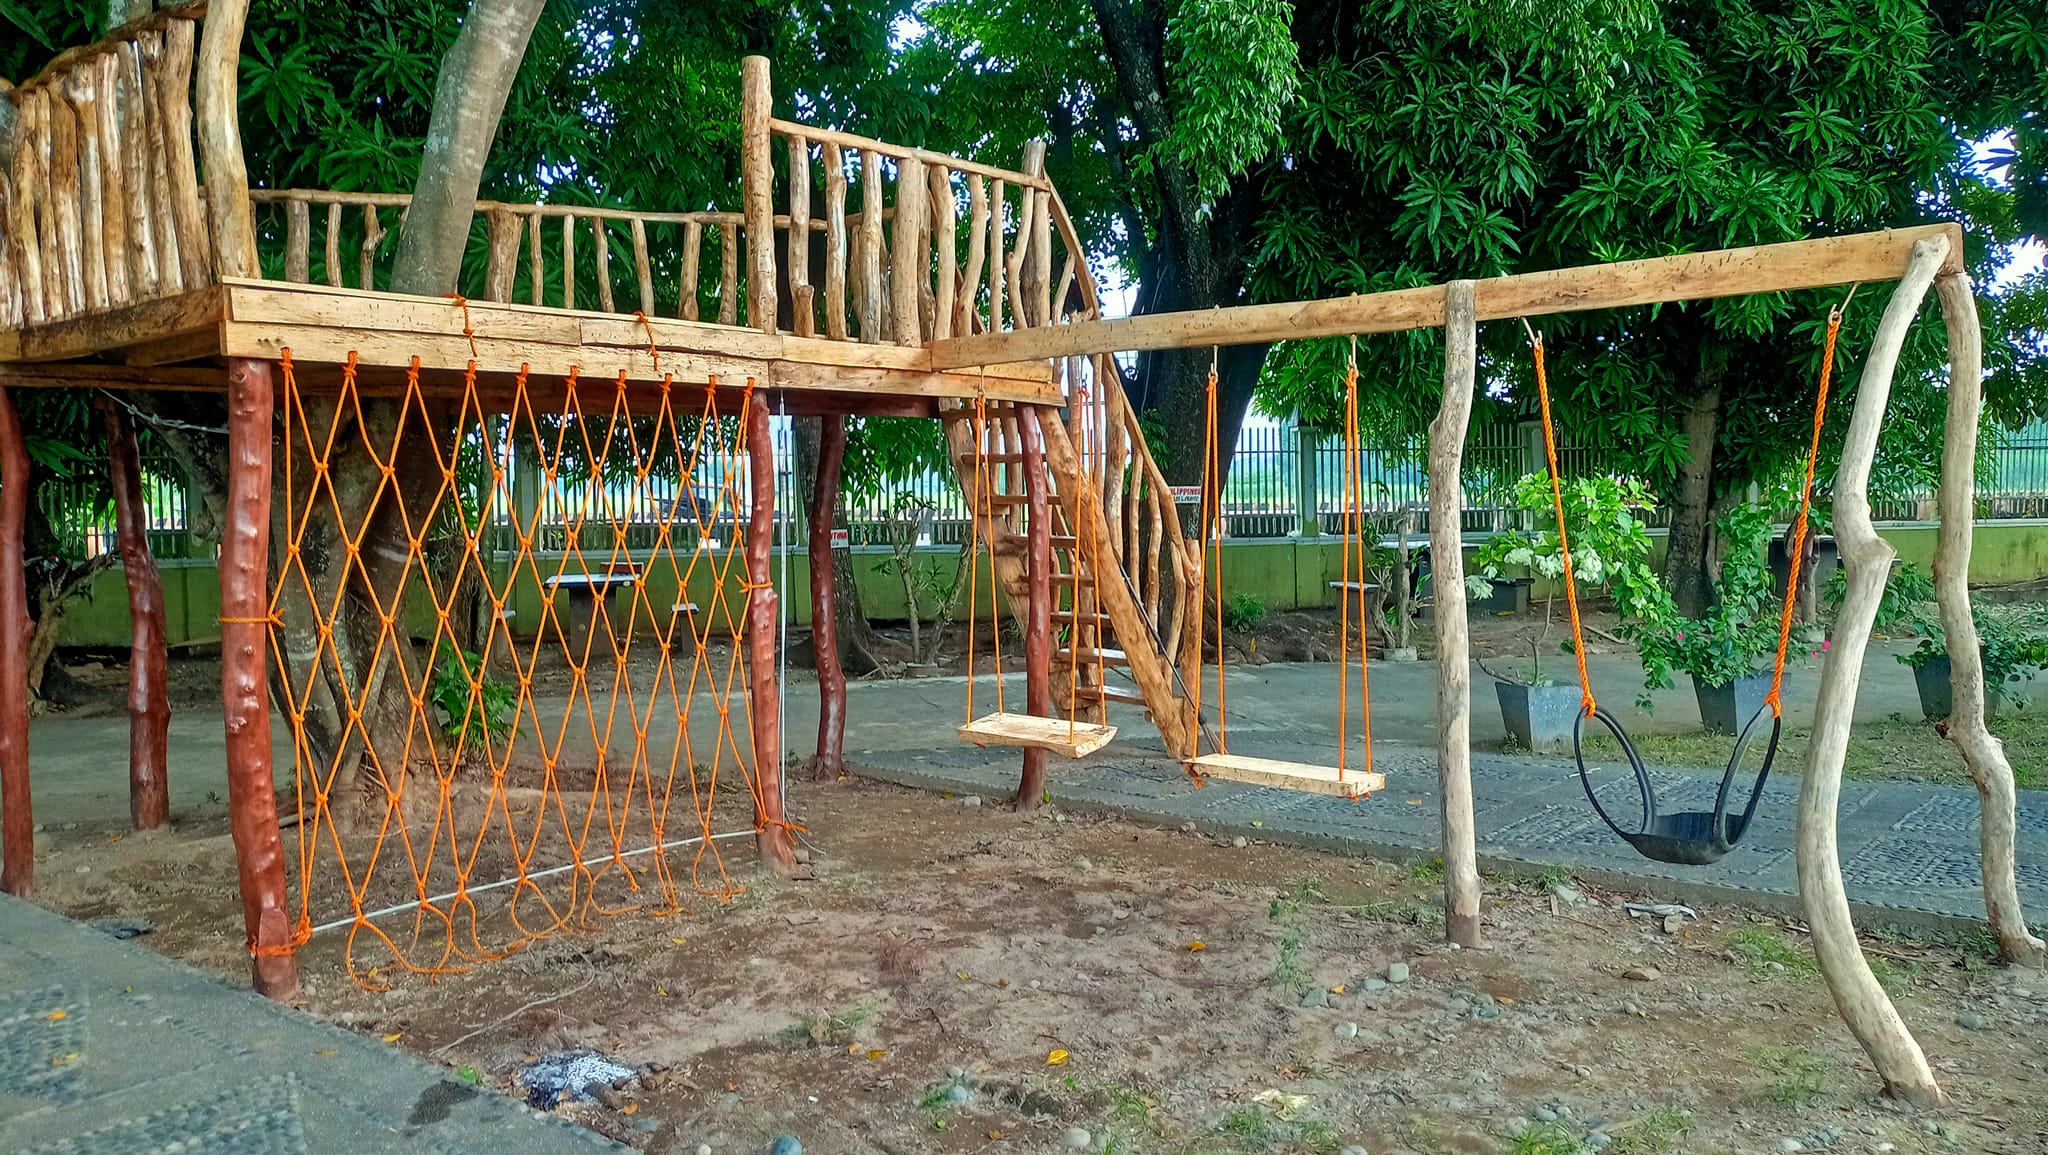 Playground